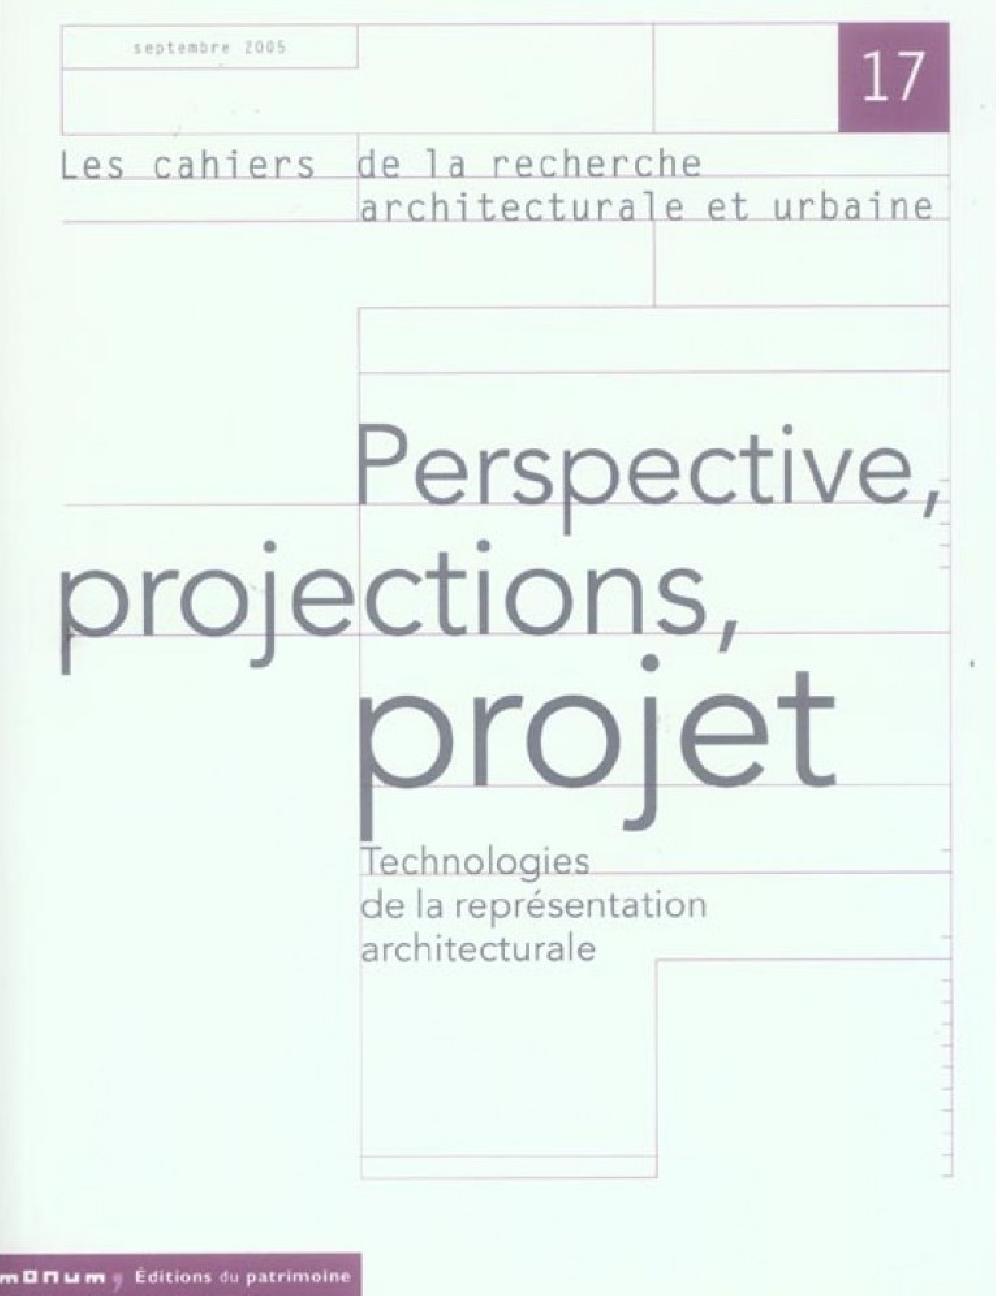 Les Cahiers de la recherche architecturale et urbaine n°17